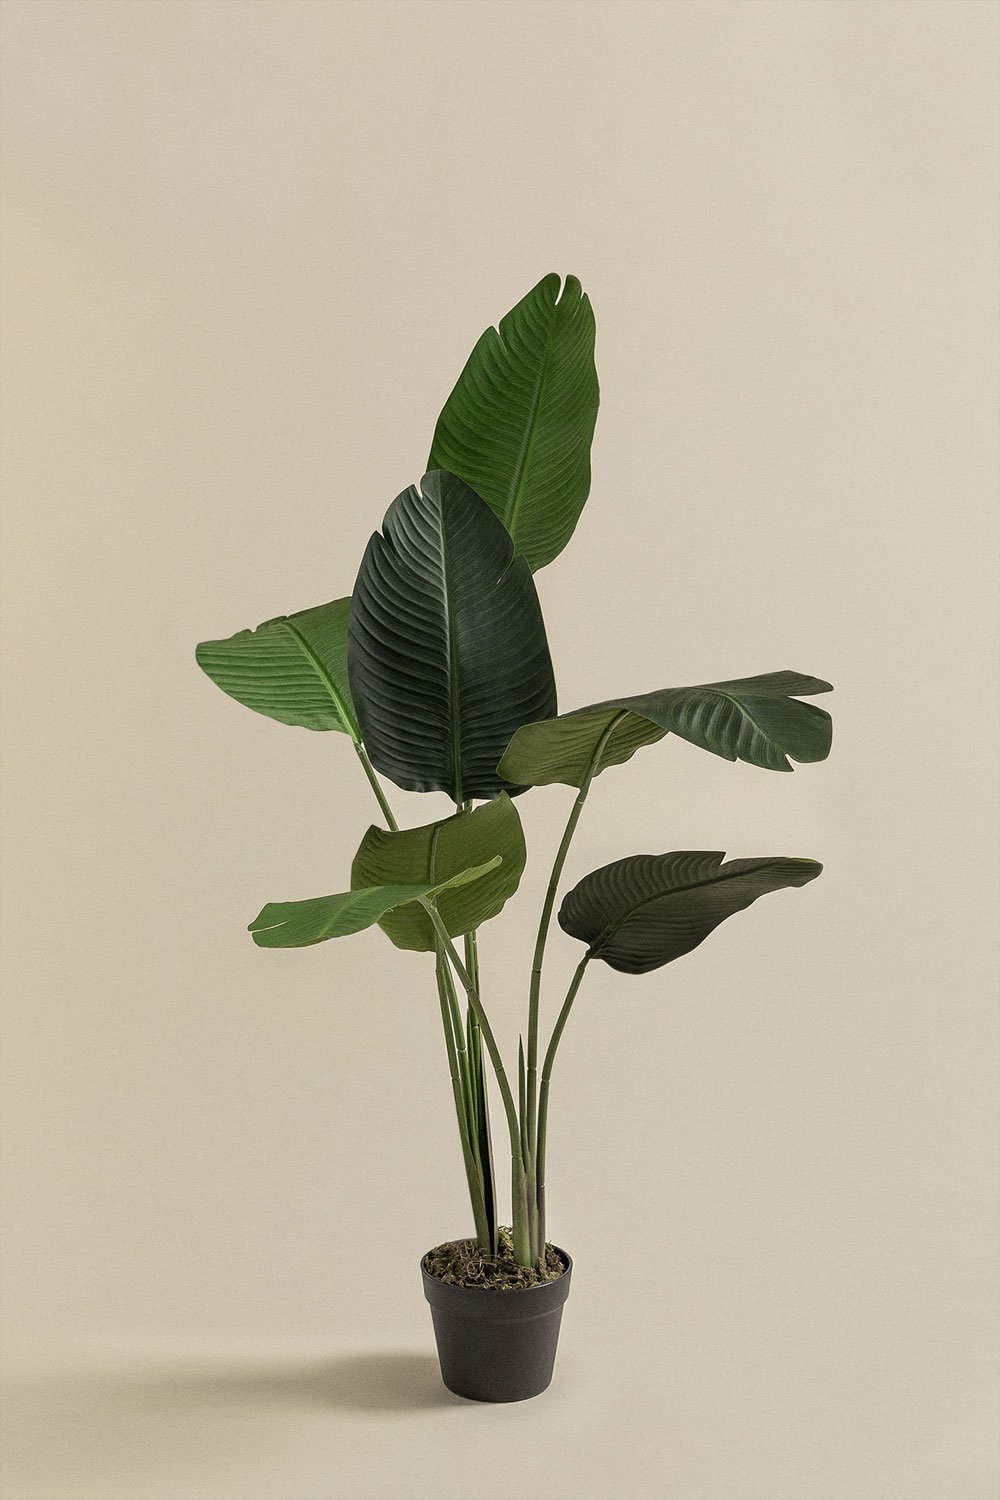 Dekoracyjna sztuczna roślina Strelitzia , obrazek w galerii 1